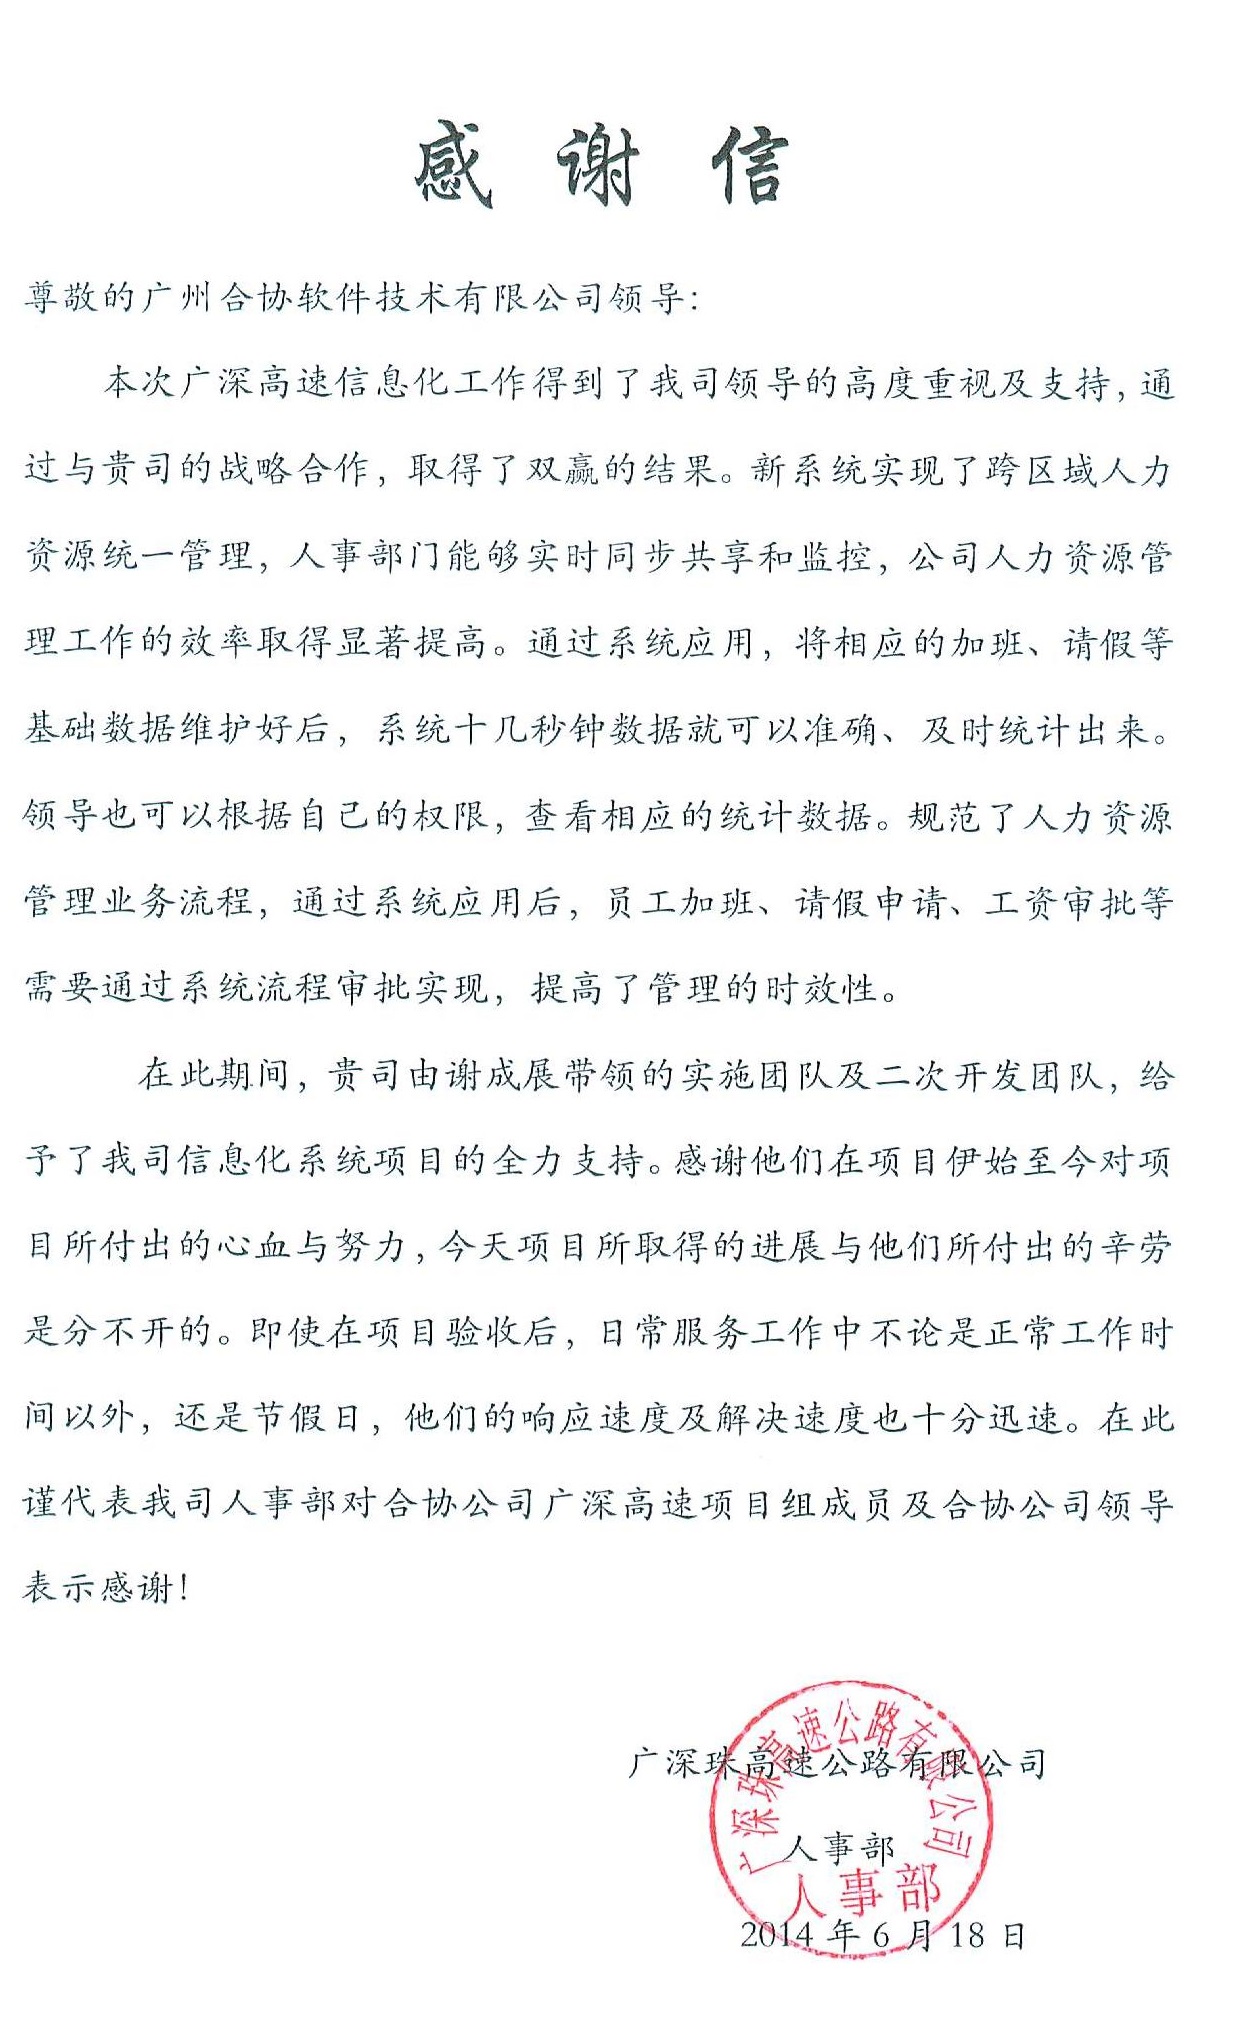 广深珠高速公路有限公司应用合协人力资源管理软件之后，发过来的感谢信。